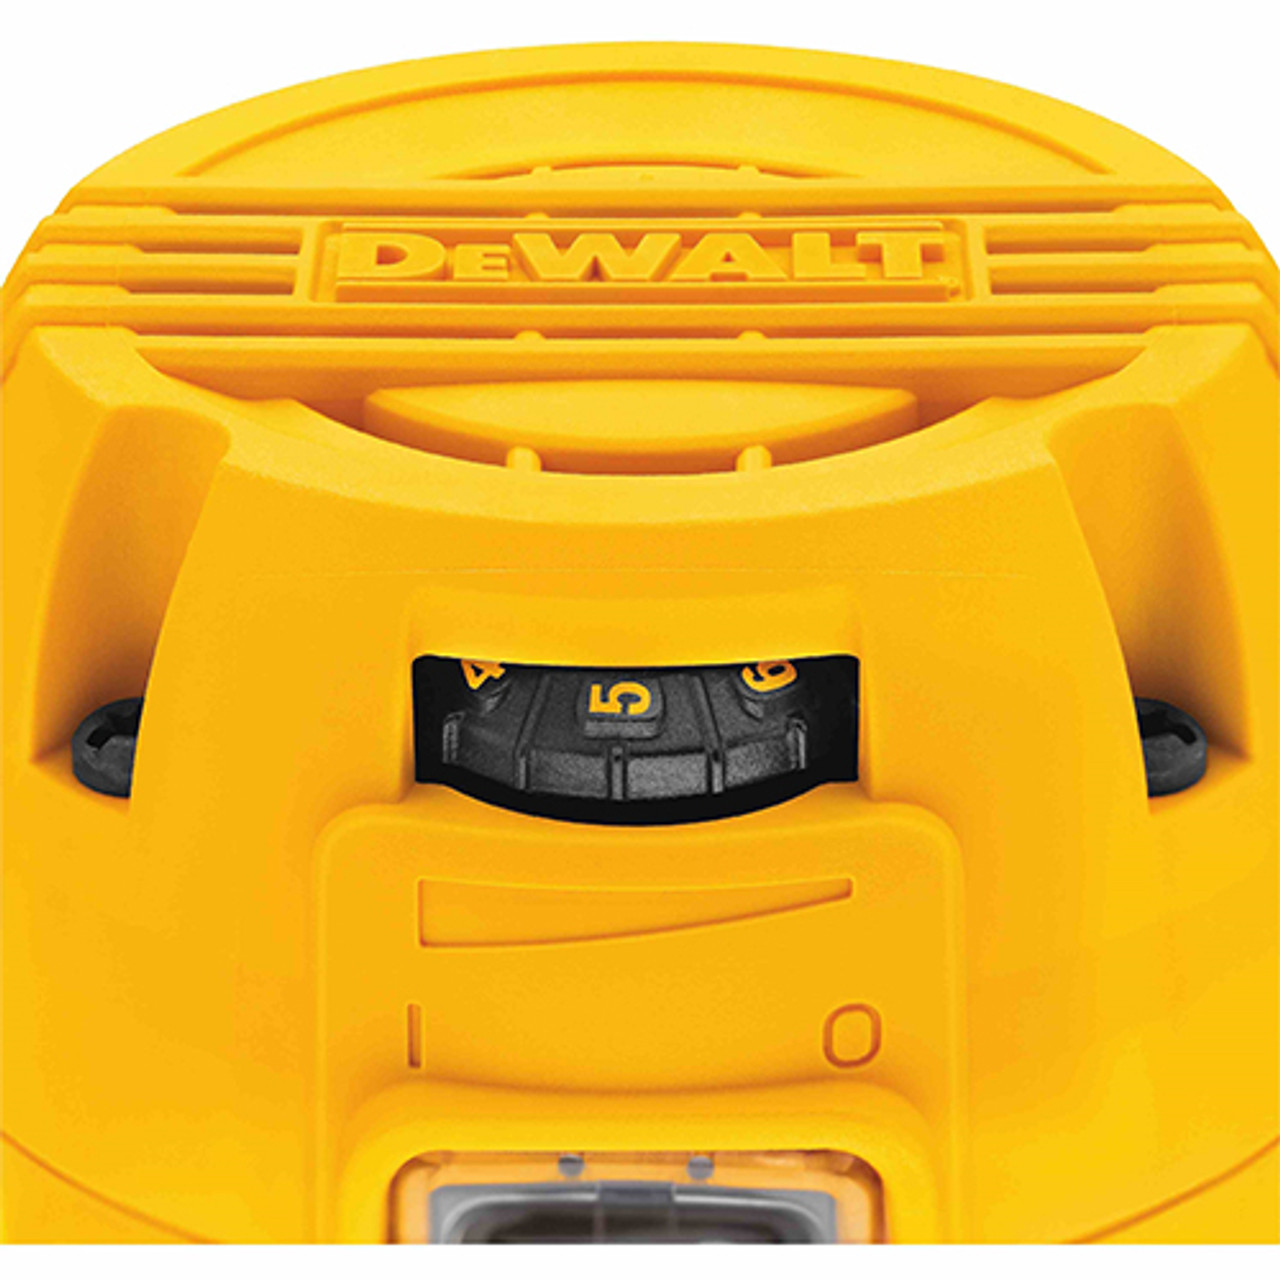 Dewalt DWP611 1-1/4 HP Compact Router